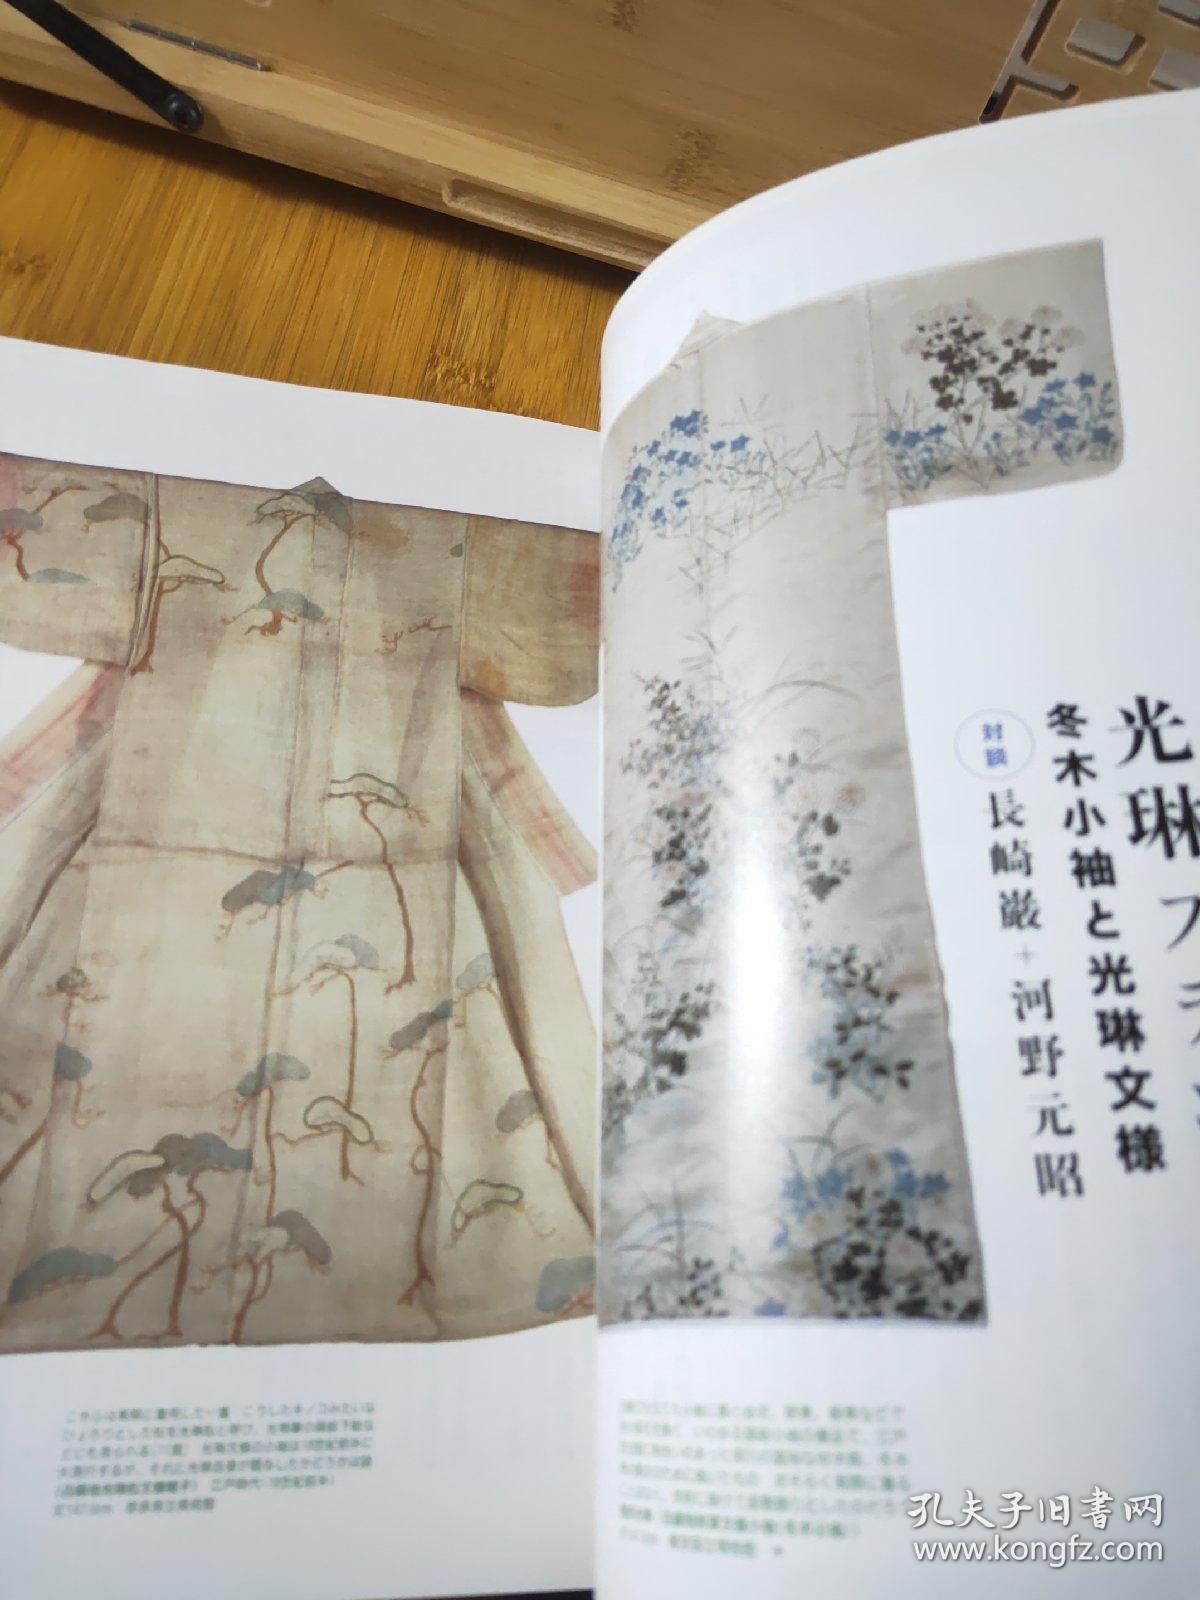 艺术新潮光琳的七不思议日本美术史美术馆博物馆浮世绘写真雕刻 新潮社 孔夫子旧书网